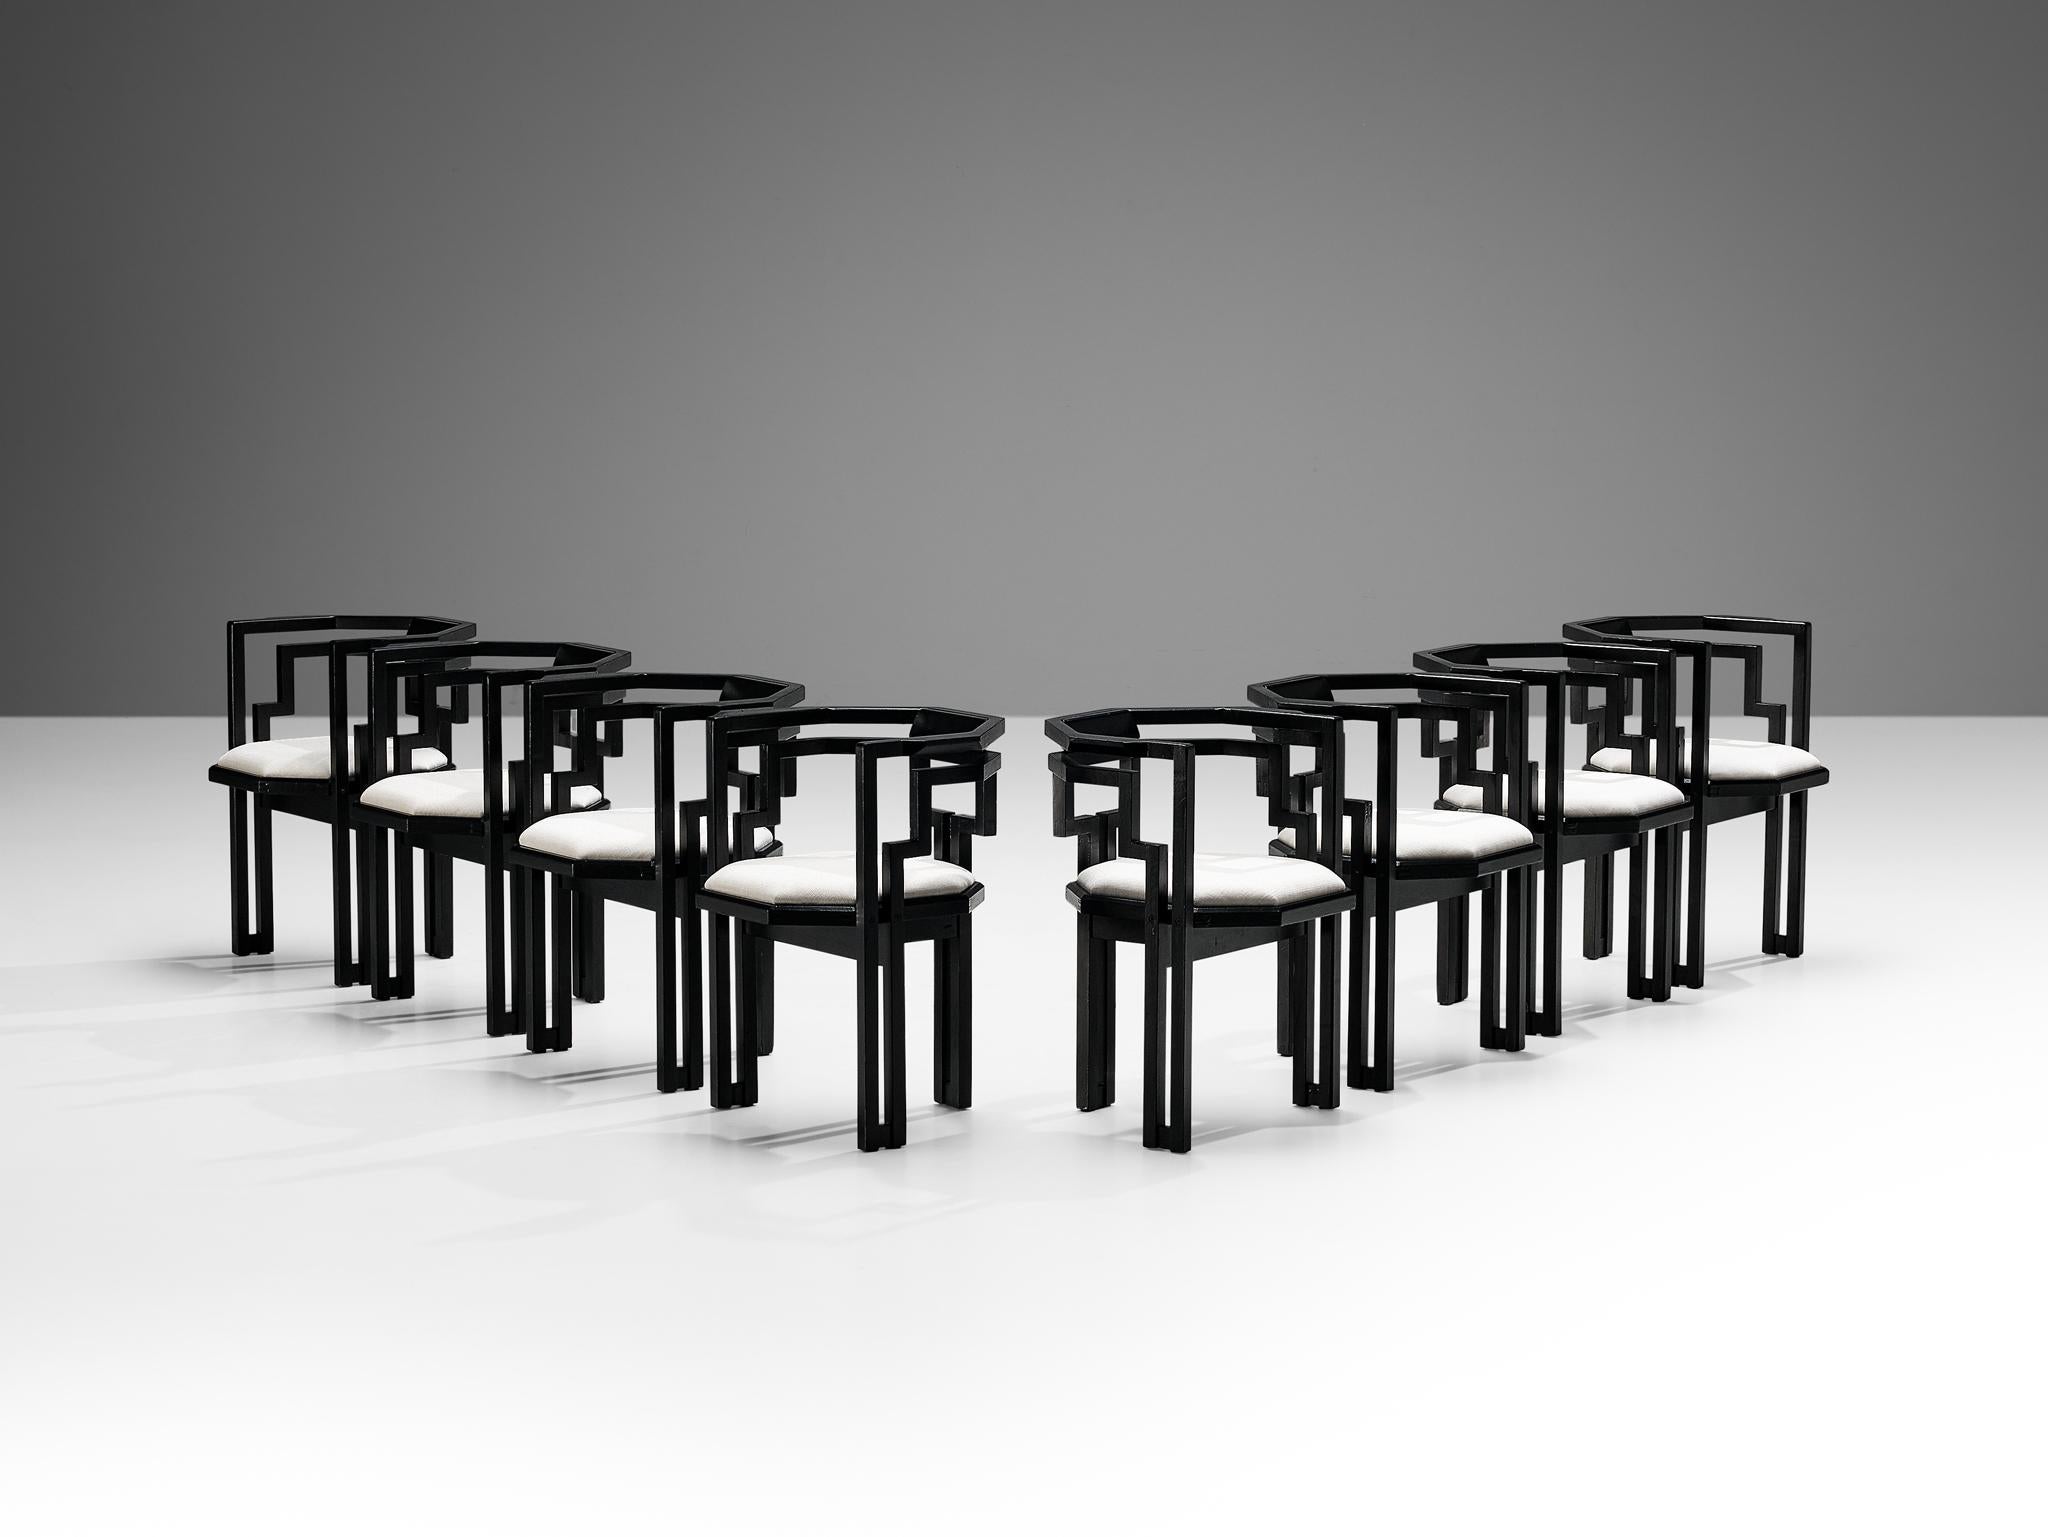 Satz von acht Esszimmerstühlen, Eiche schwarz lackiert, weißer Stoff, Italien, 1970er Jahre.

Hervorragender Satz von acht geometrischen italienischen Esszimmerstühlen. Diese Stühle verbinden ein skulpturales Design, das einfach, aber sehr stark in